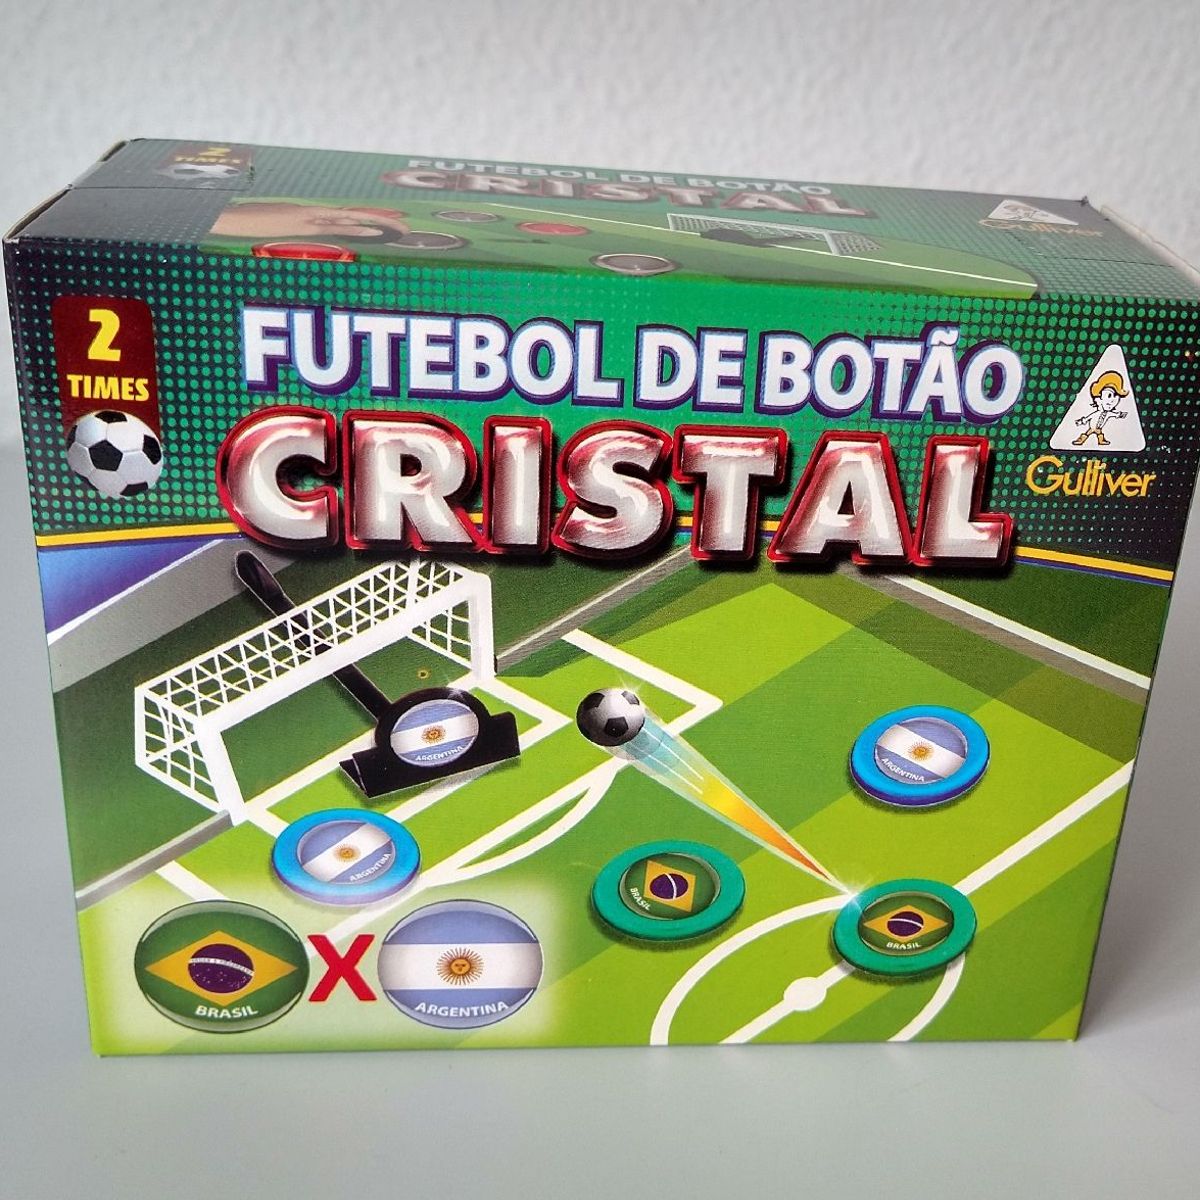 Futebol De Botão Cristal Brasil e Argentina-0382